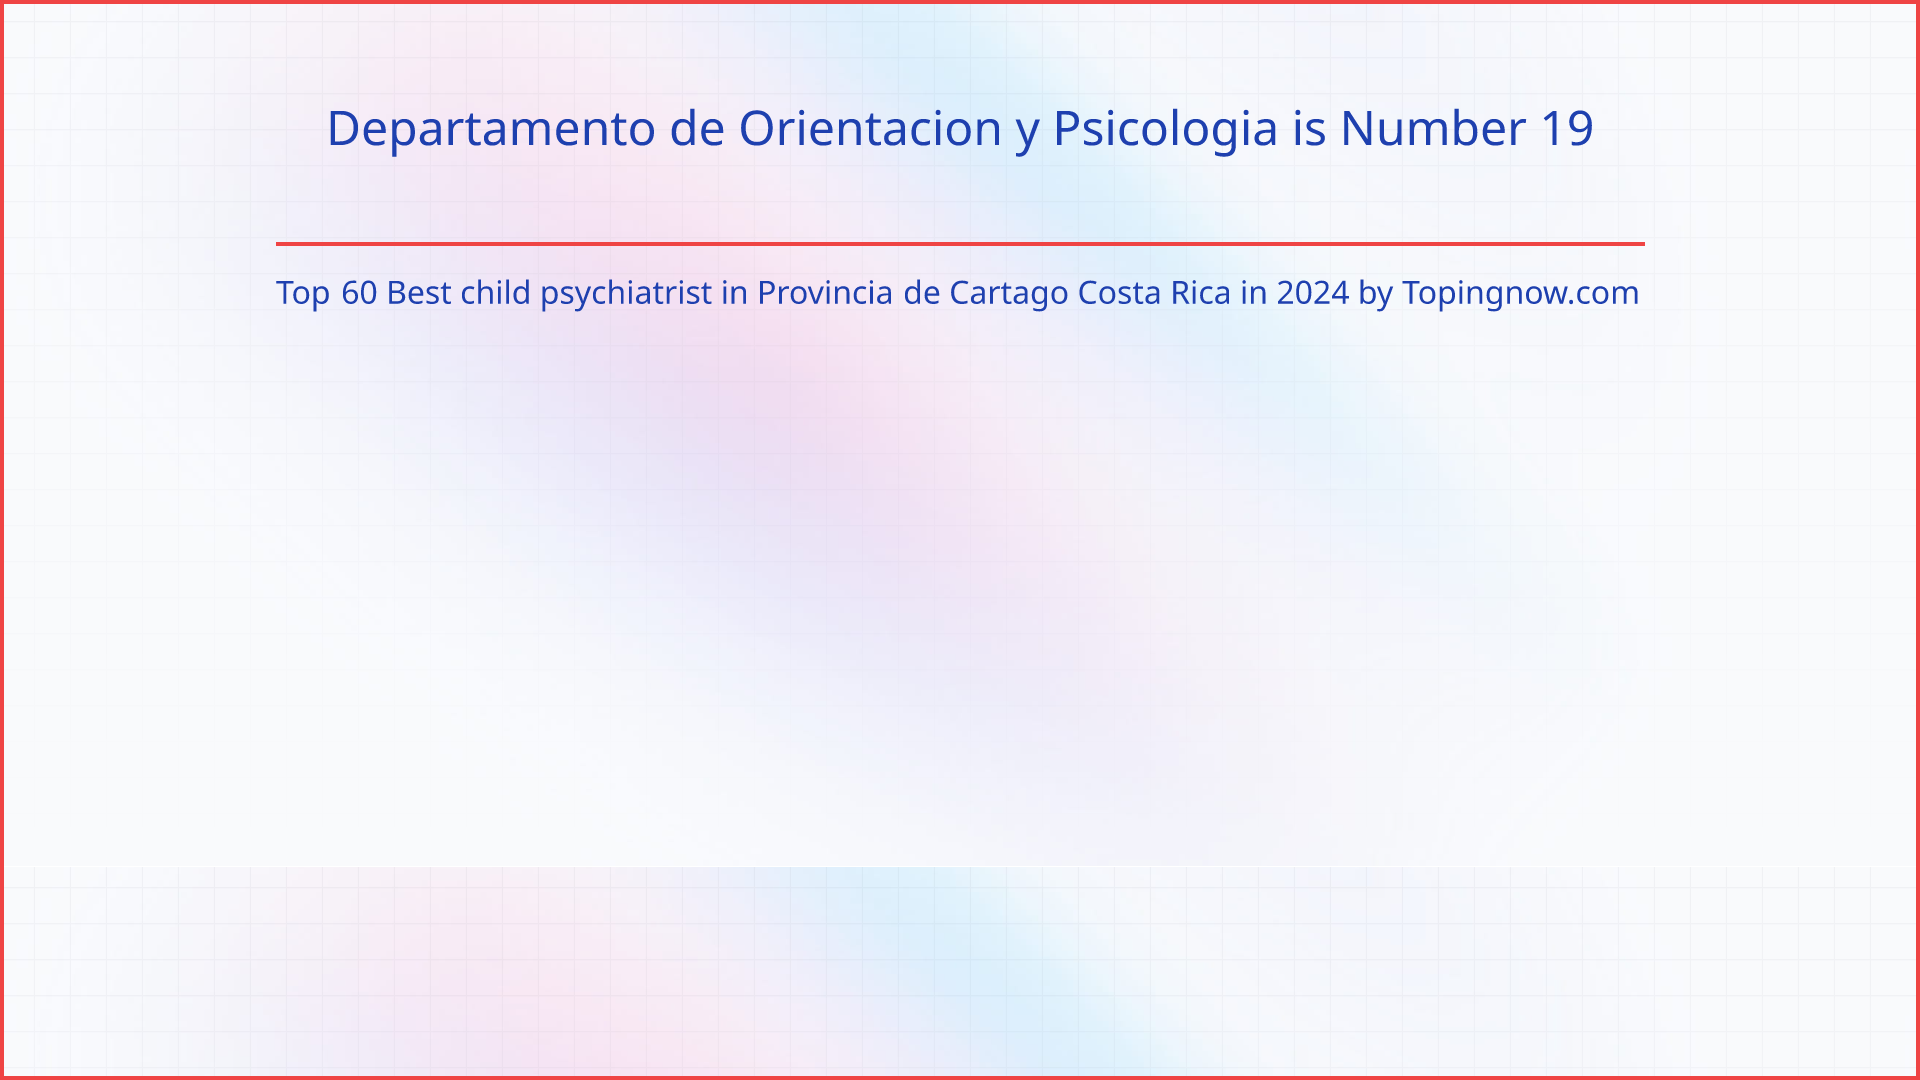 Departamento de Orientacion y Psicologia: Top 60 Best child psychiatrist in Provincia de Cartago Costa Rica in 2024